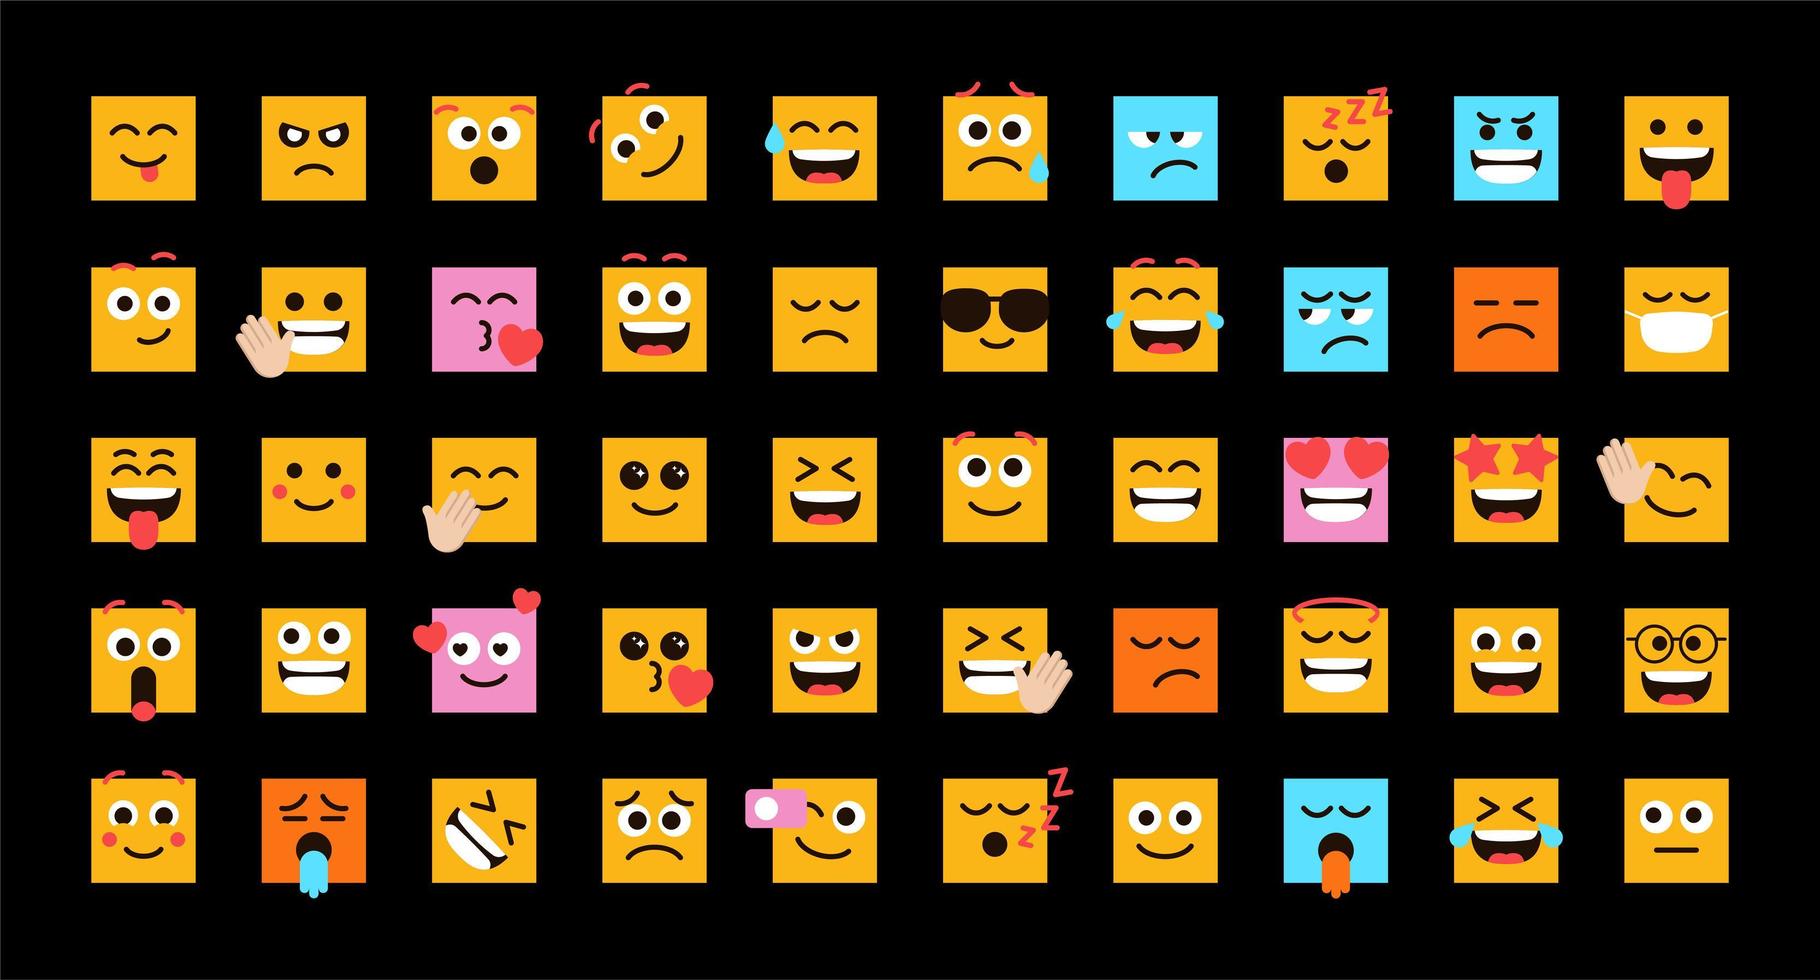 söta uttryckssymboler i form av fyrkantiga ansikten vektoruppsättning för inlägg och reaktion på sociala medier. rolig emoji med ansiktsuttryck. vektor illustration